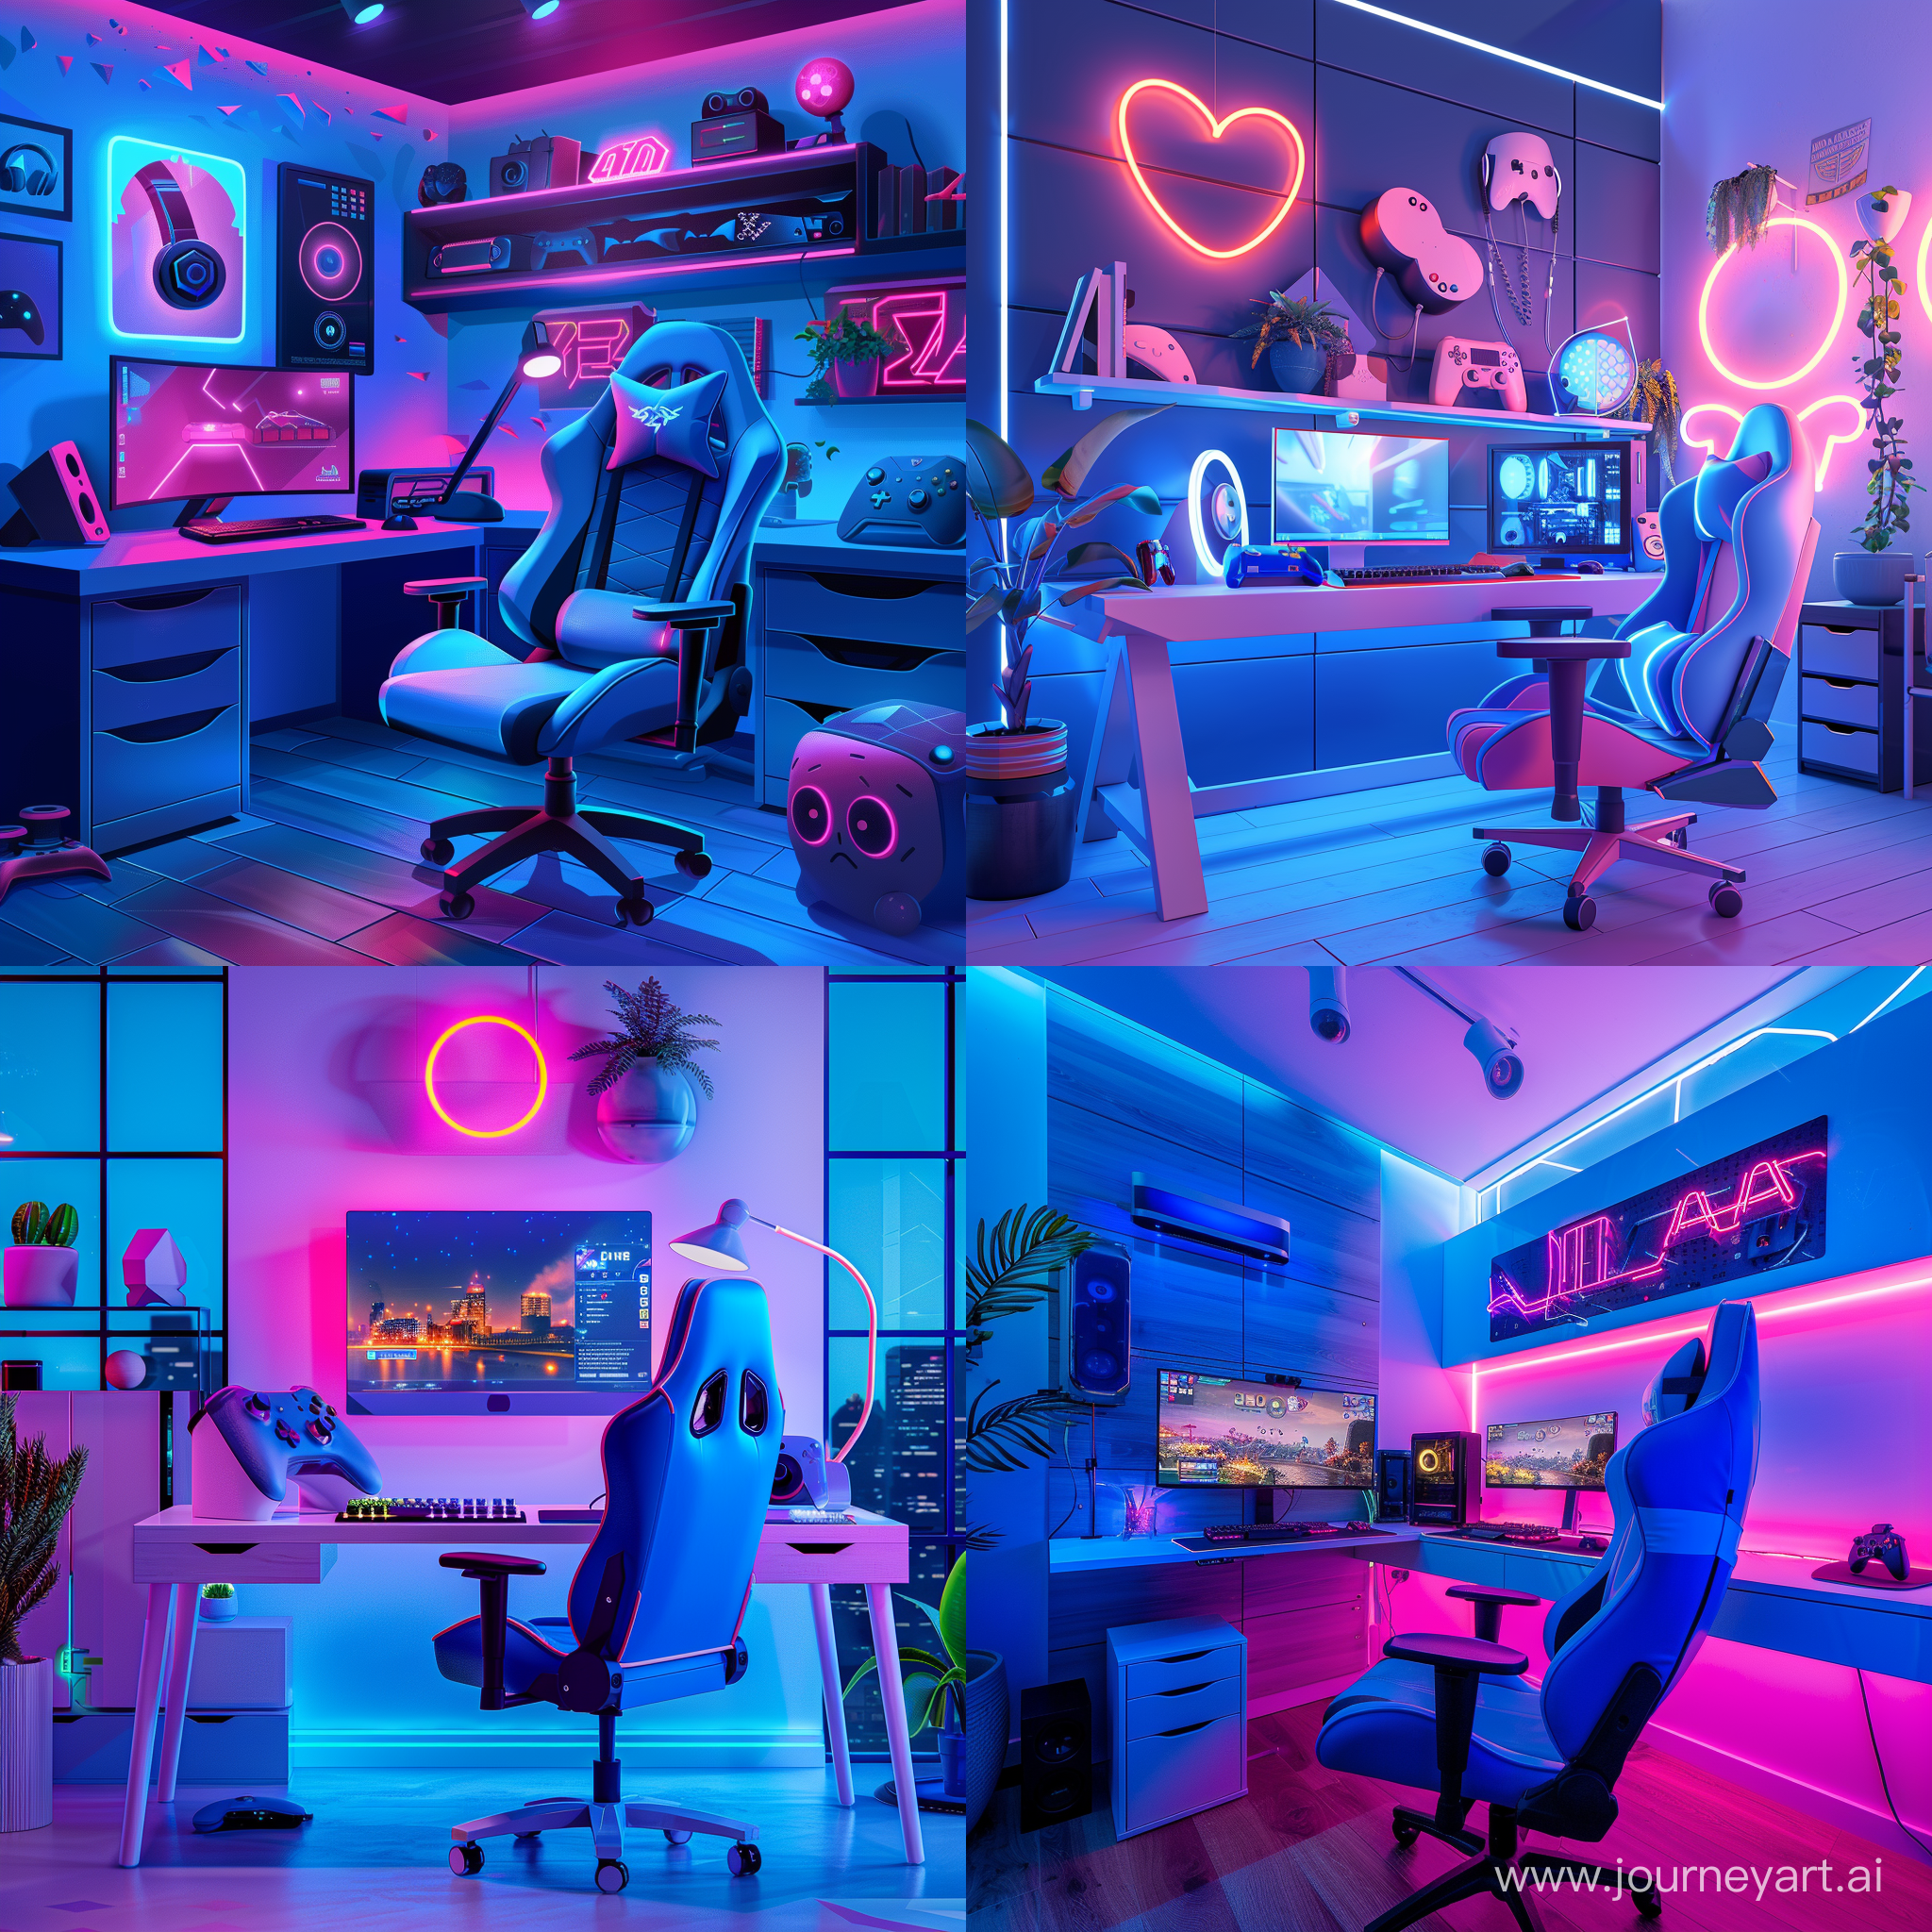 комната геймера, выполненная в голубых и розовых цветах, по освещению яркая, насыщенная, в формате 16:9, на фоне должны быть неоновые вещи